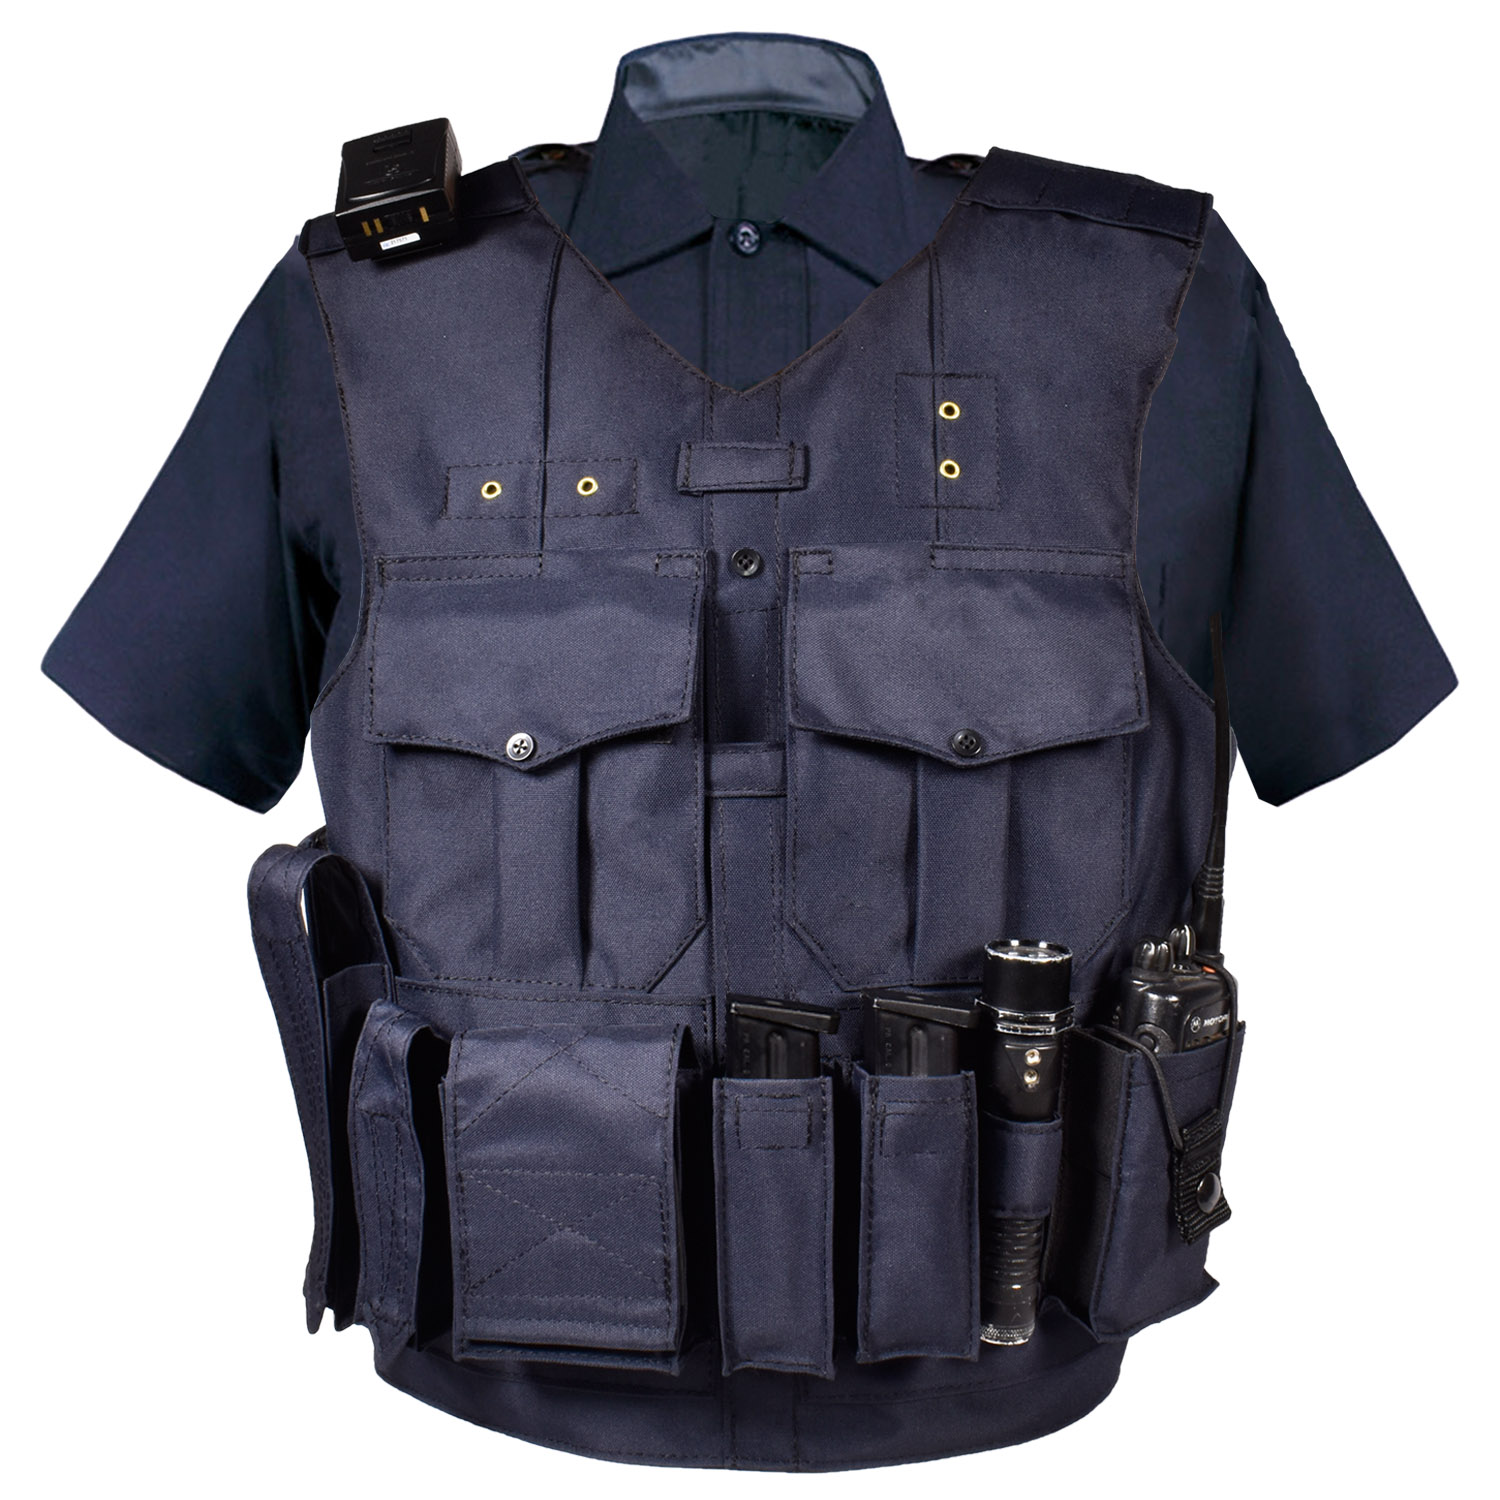 eau claire vest carrier with dark blue uniform shirt